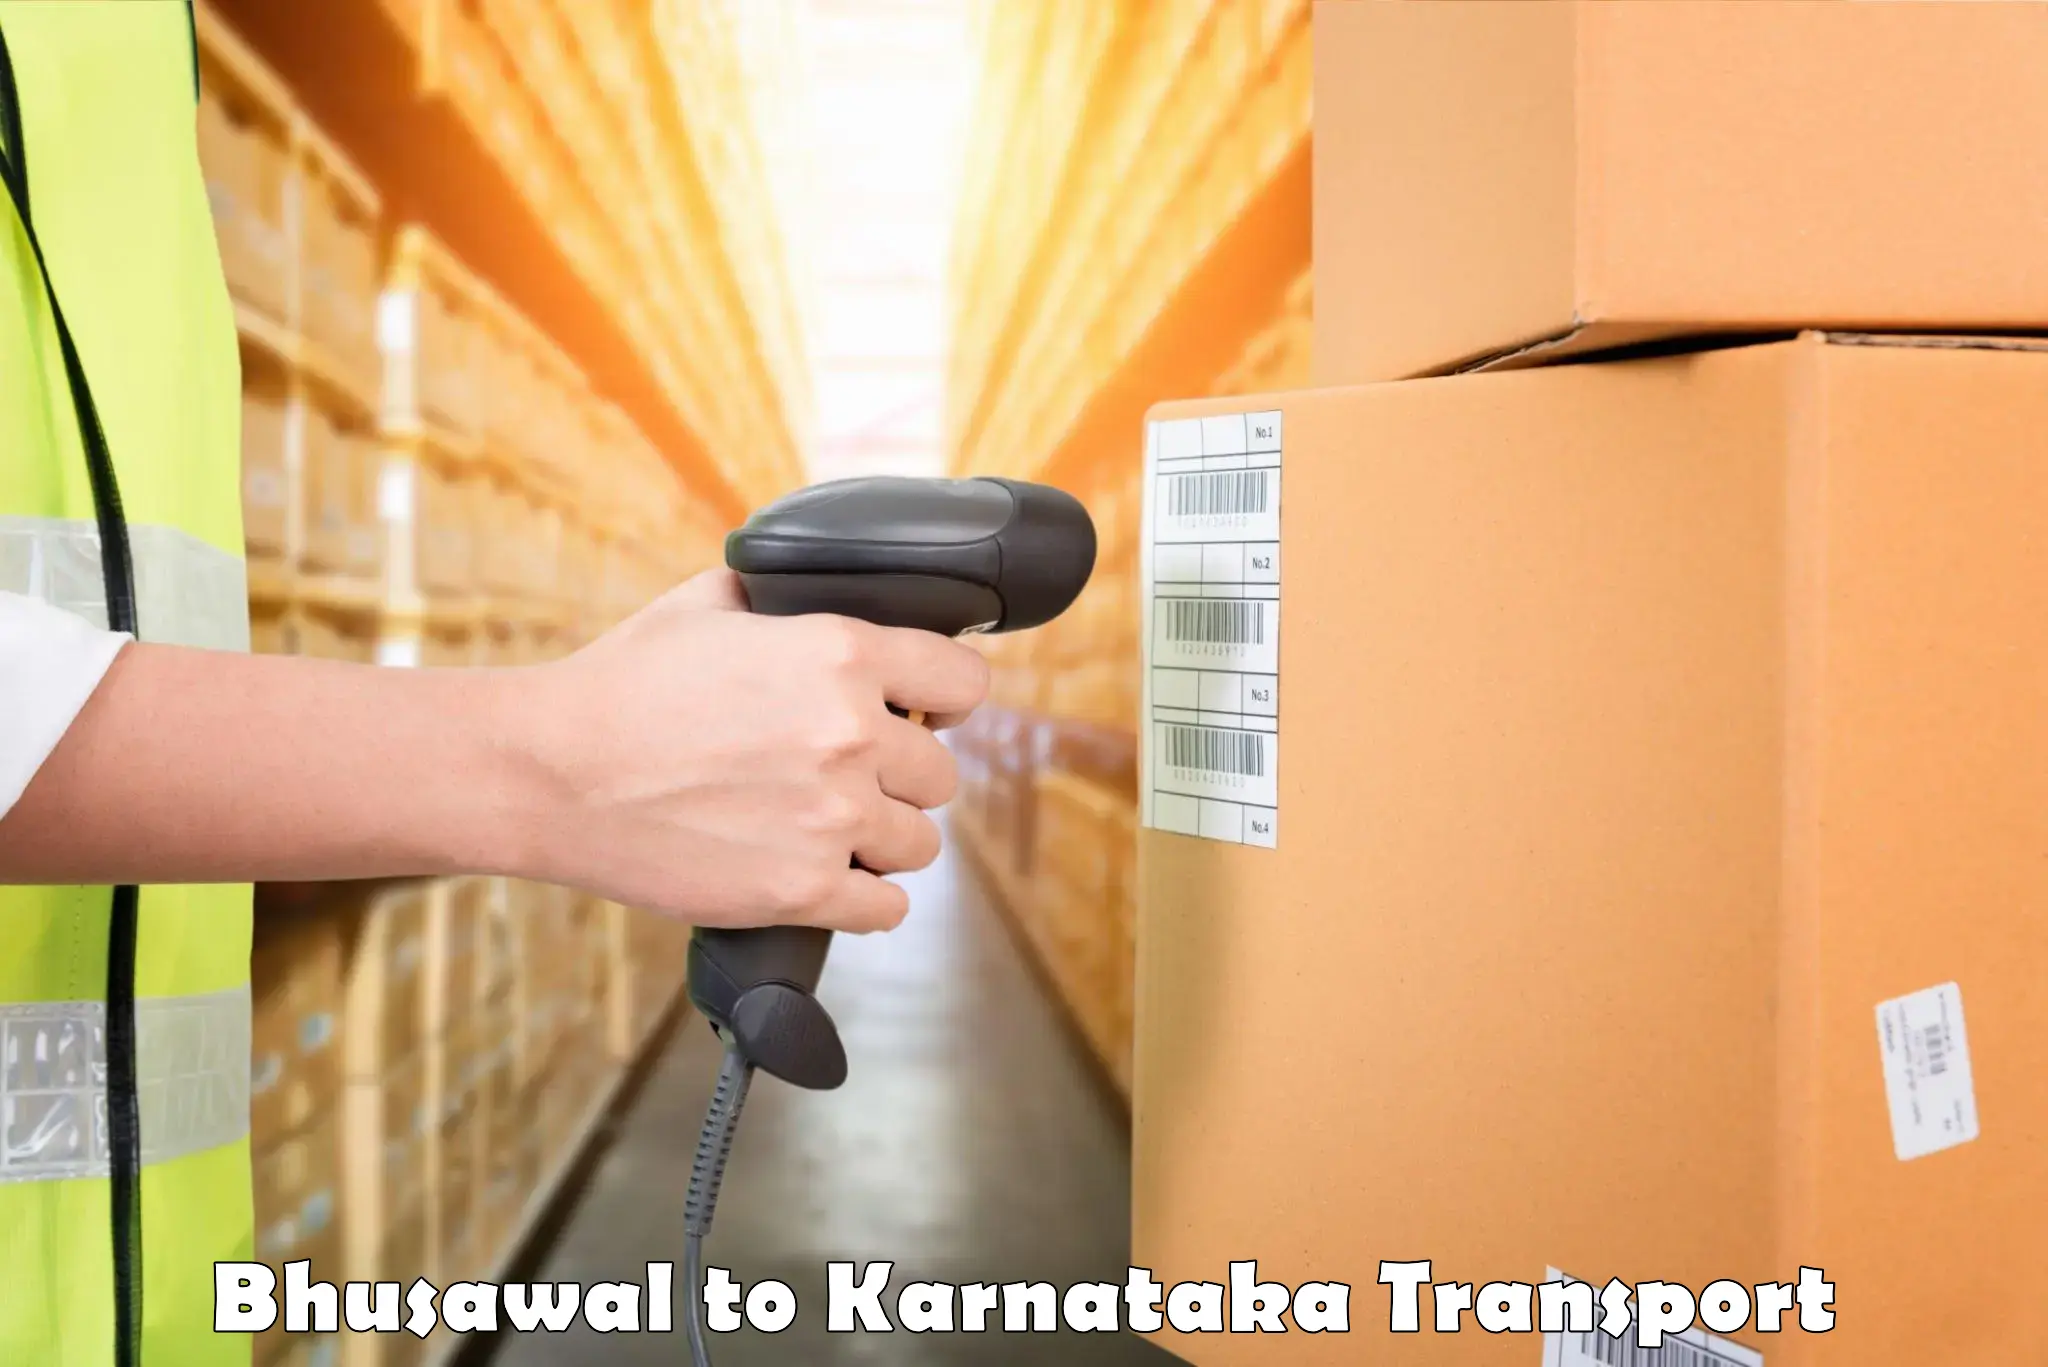 Cycle transportation service Bhusawal to Kanjarakatte